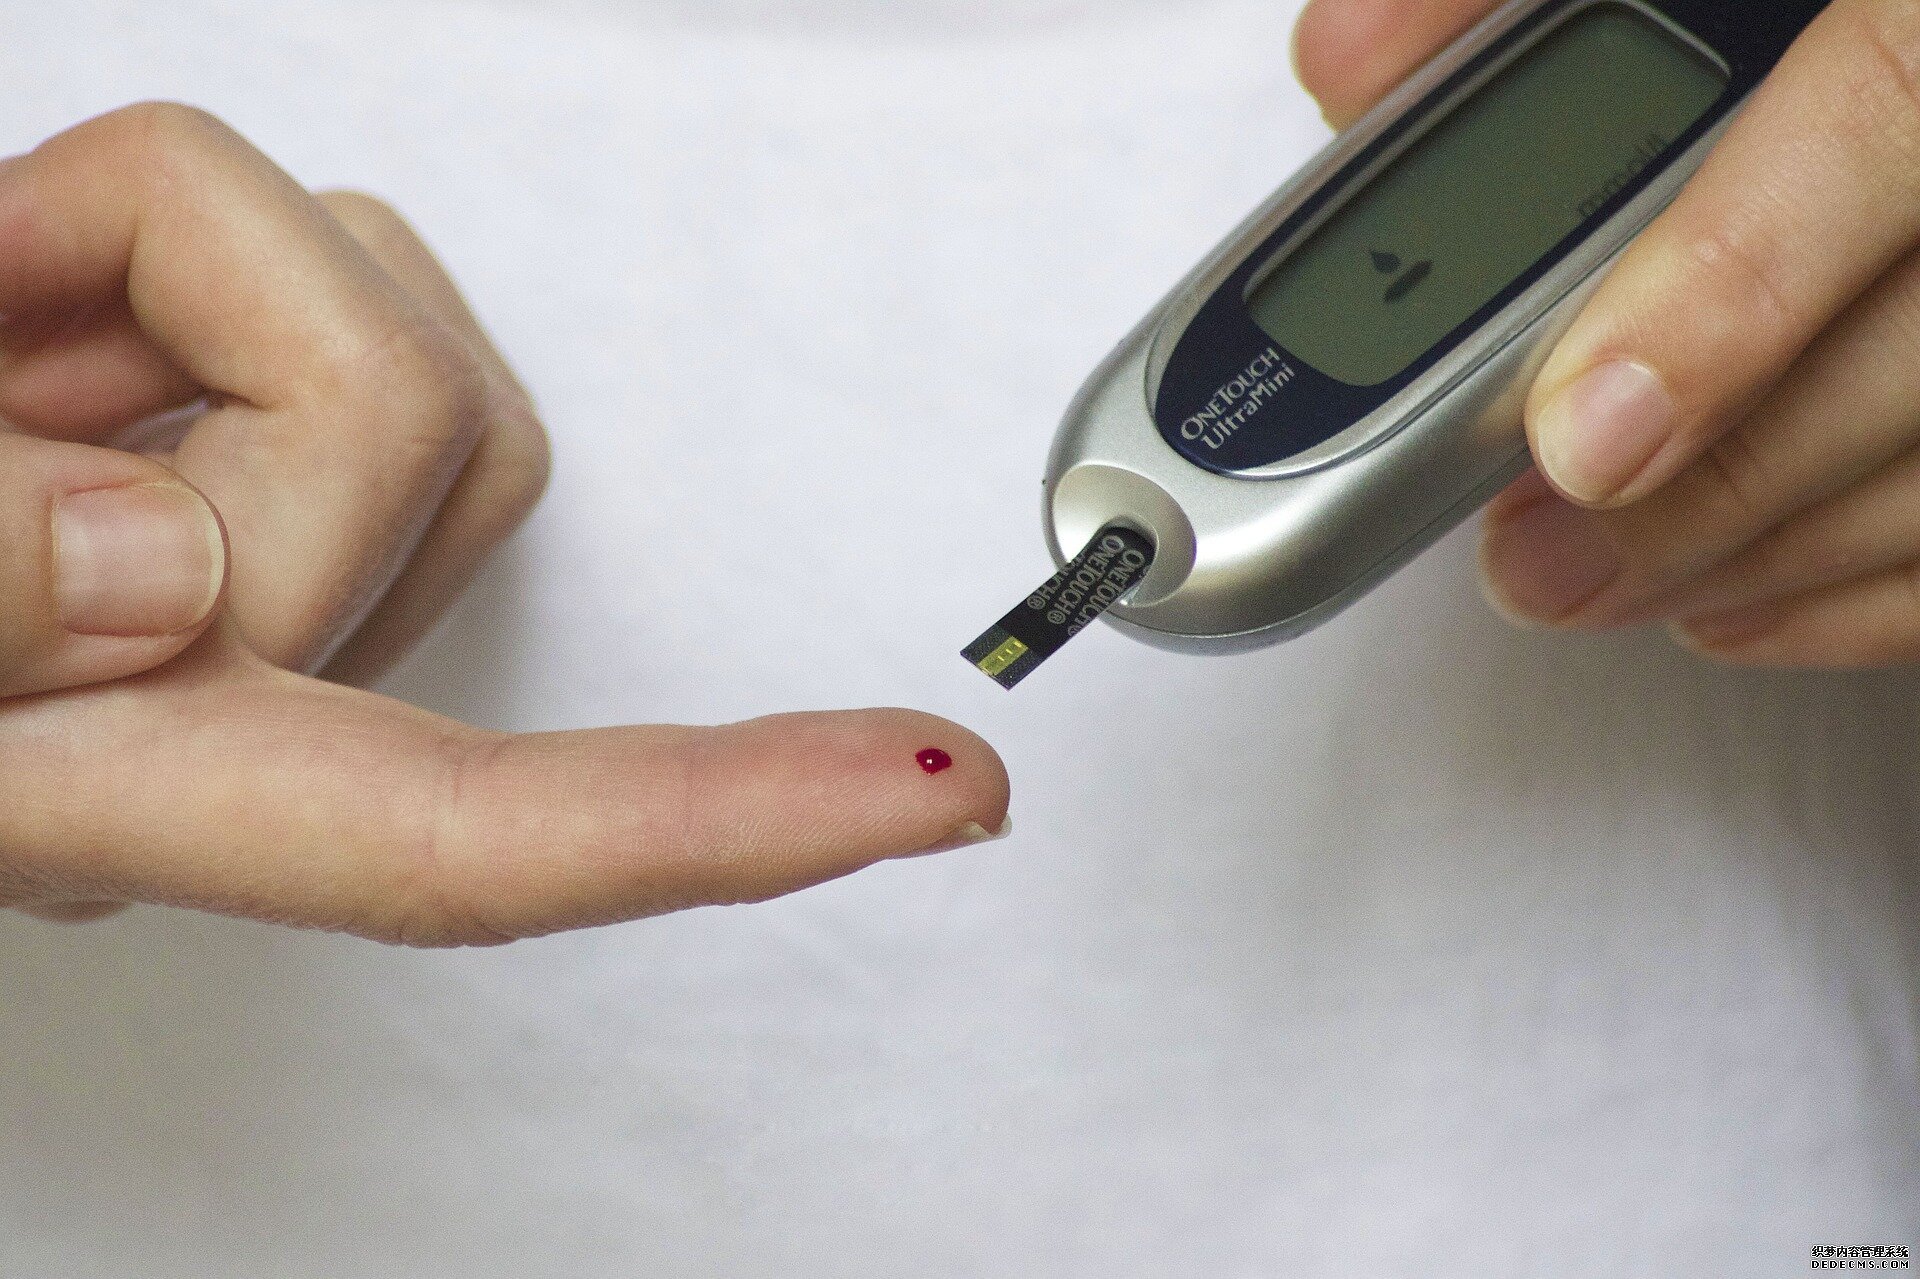 人工胰腺可以防止T1D杏耀游戏帐号患者危险的低血糖